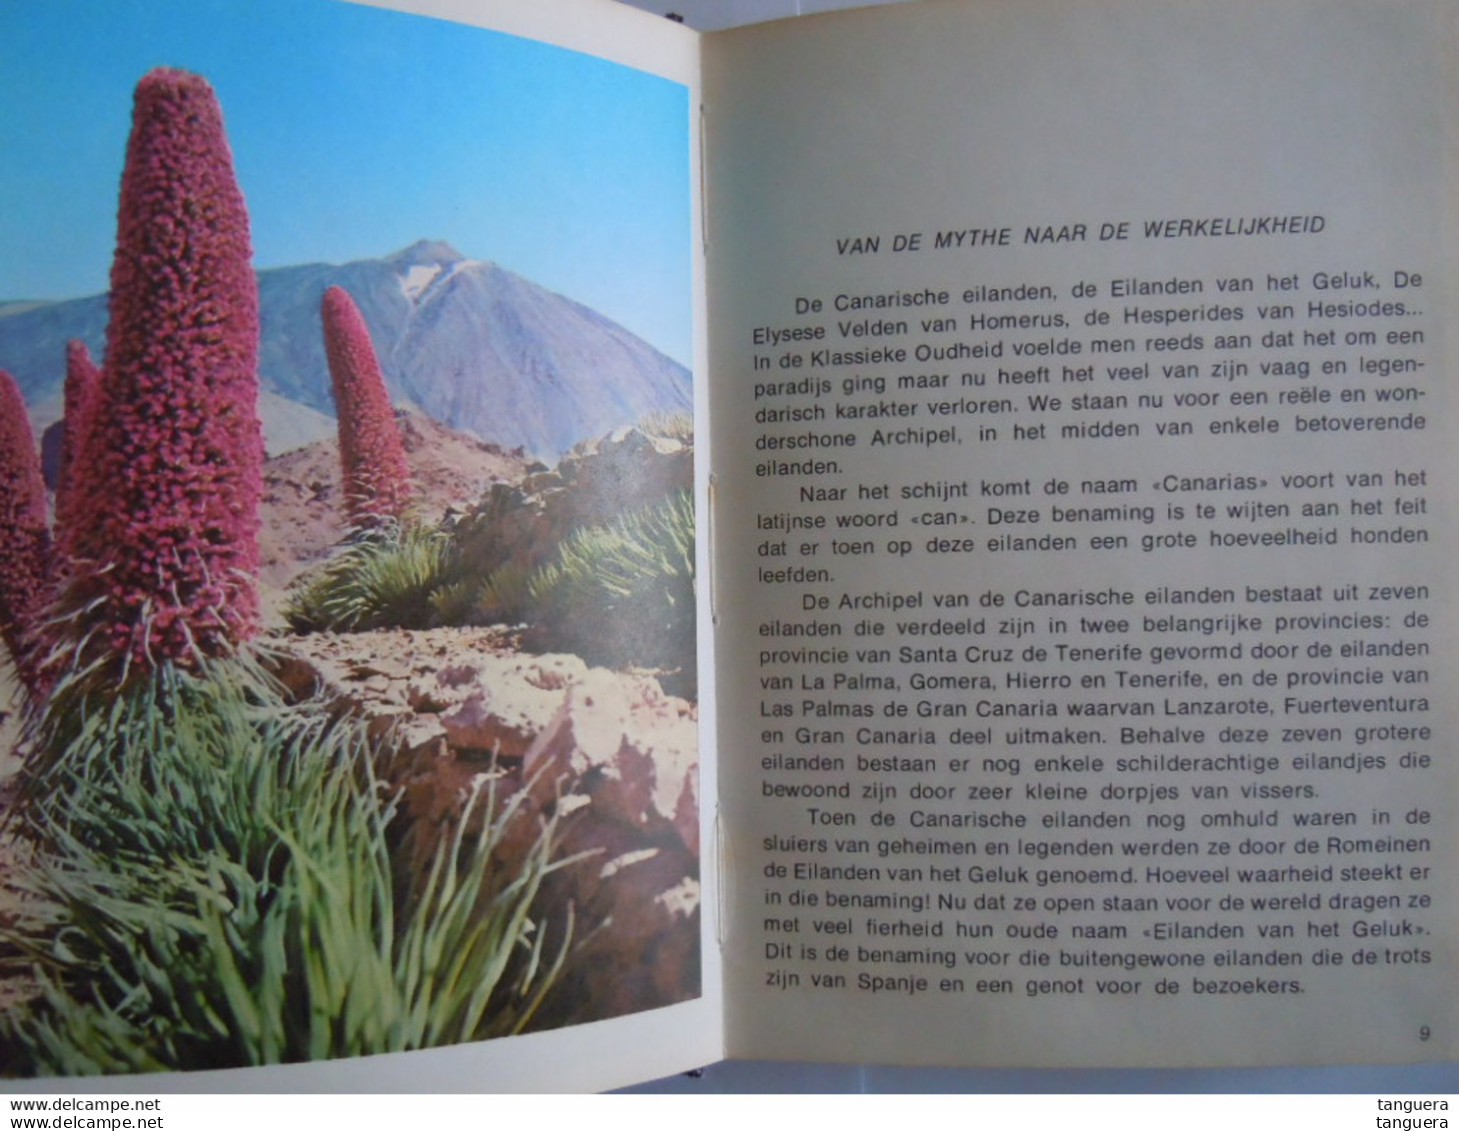 Tenerife Gids En Souvenir 1971 Tekst C.N. Perez Vertaald Uit Het Spaans - Pratique